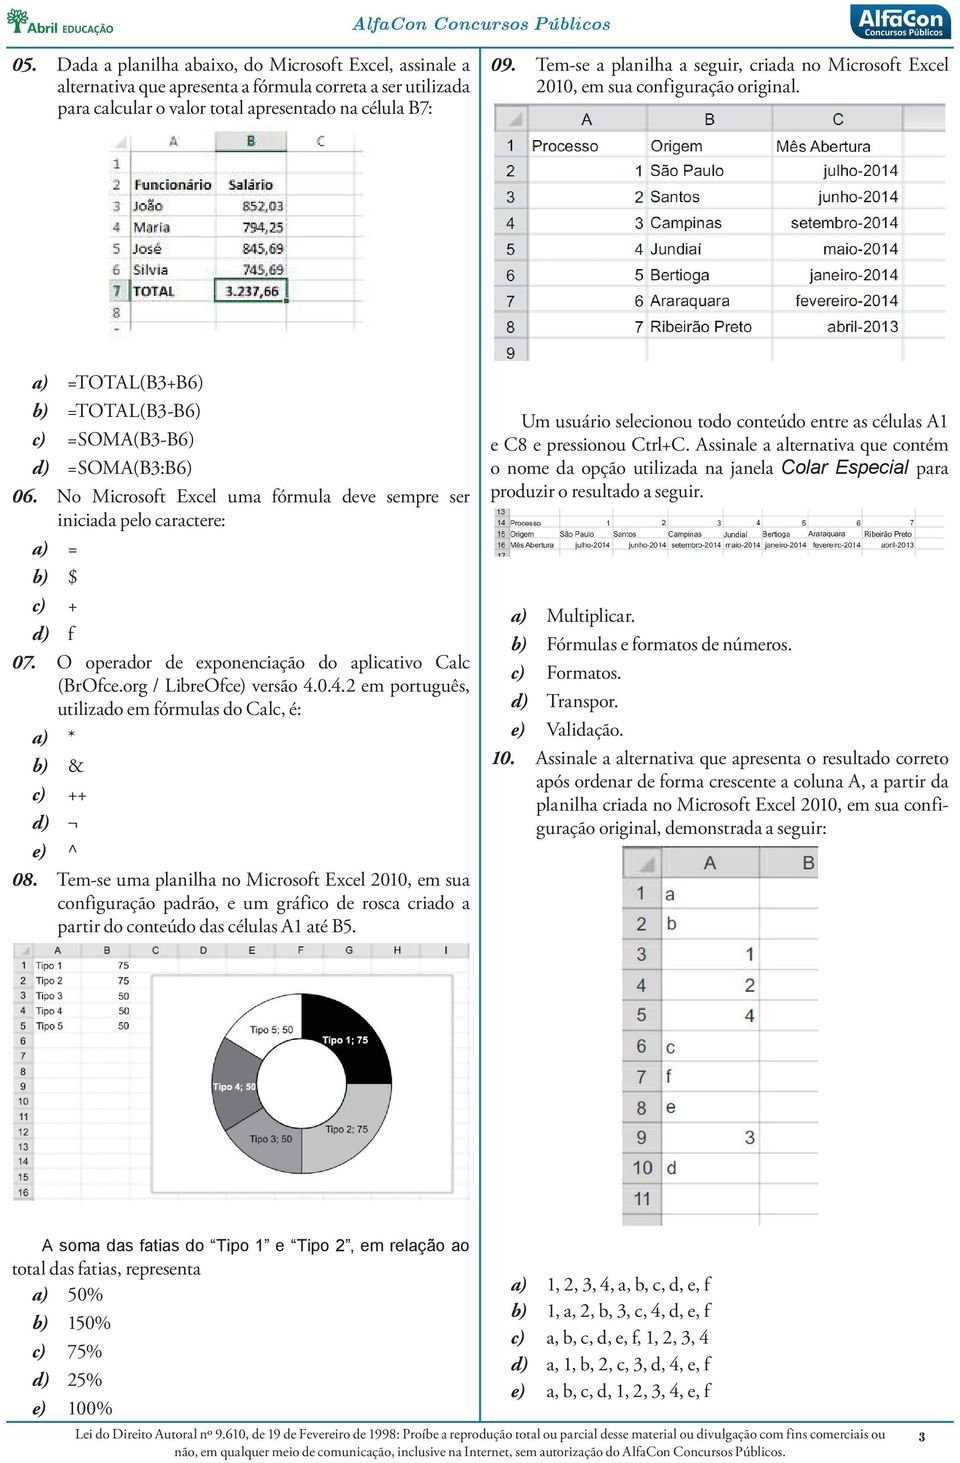 No Microsoft Excel uma fórmula deve sempre ser iniciada pelo caractere: a) = b) $ c) + d) f 07. O operador de exponenciação do aplicativo Calc (BrOfce.org / LibreOfce) versão 4.